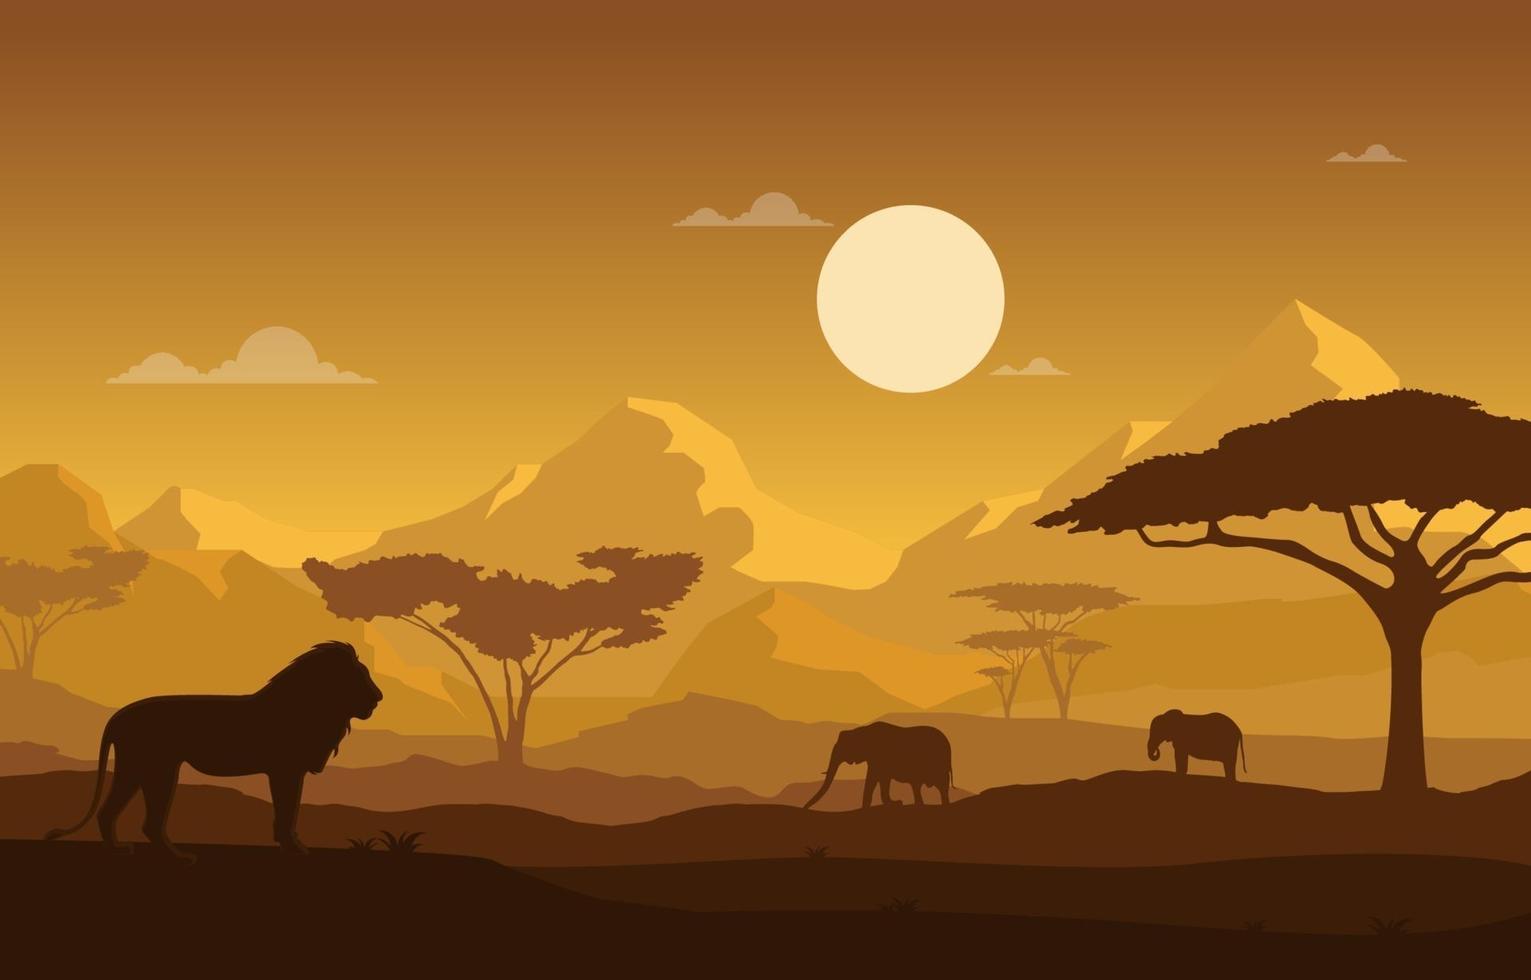 leão e elefantes na ilustração da paisagem da savana africana vetor